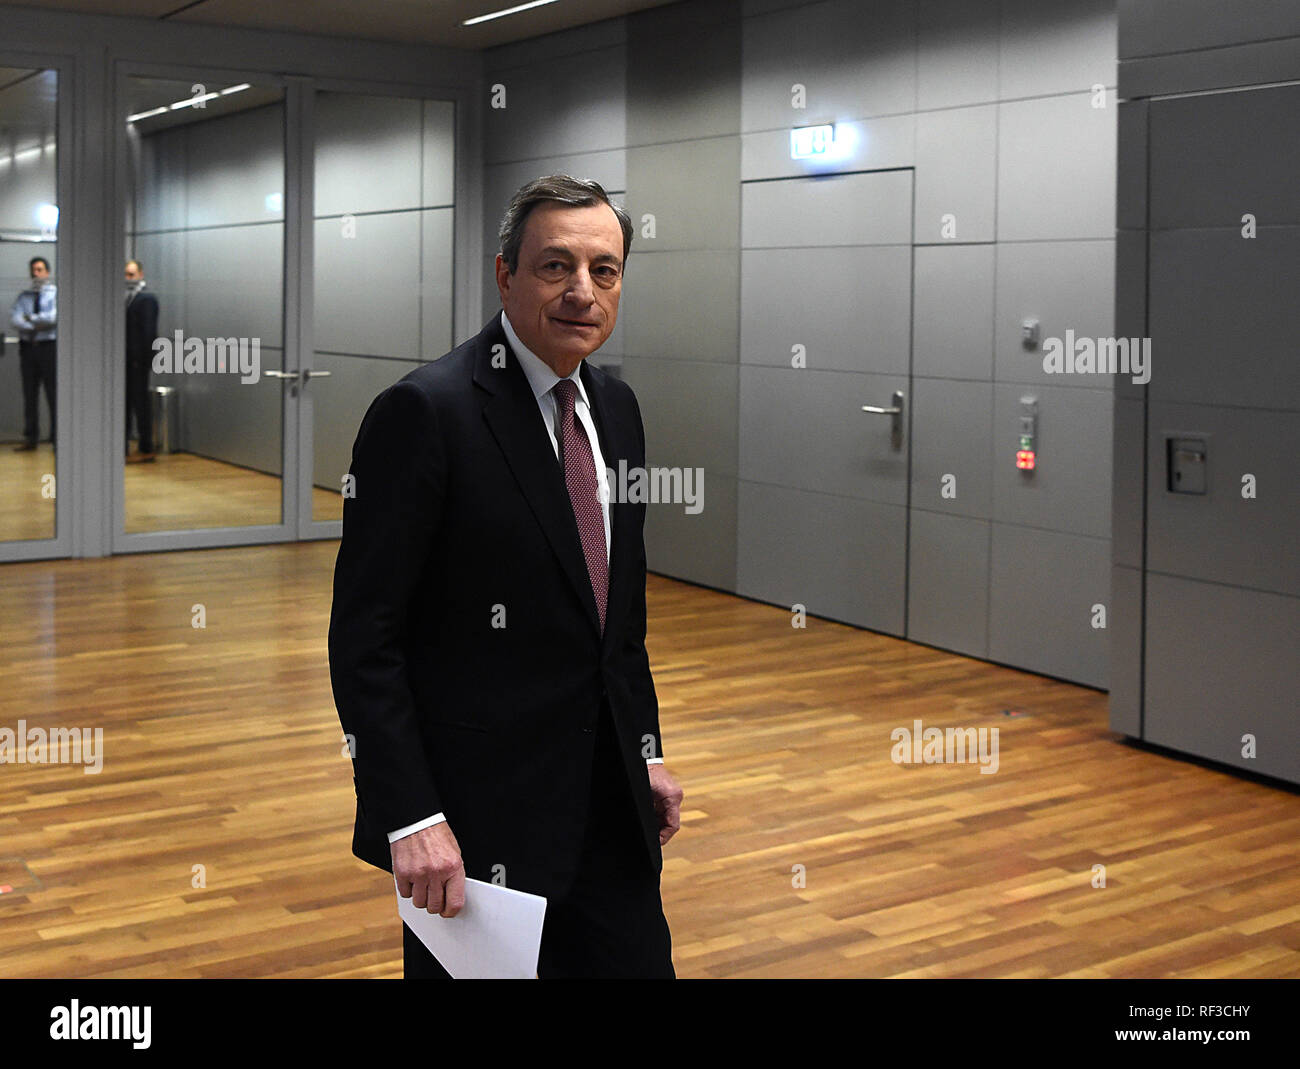 Francfort, Allemagne. 24 Jan, 2019. Banque centrale européenne (BCE) Mario Draghi Président assiste à une conférence de presse au siège de la BCE à Francfort, Allemagne, le 24 janvier 2019. La Banque centrale européenne (BCE) a annoncé jeudi à maintenir les taux d'intérêt pour la zone euro inchangé au moins jusqu'à l'été 2019. Crédit : Yang Lu/Xinhua/Alamy Live News Banque D'Images